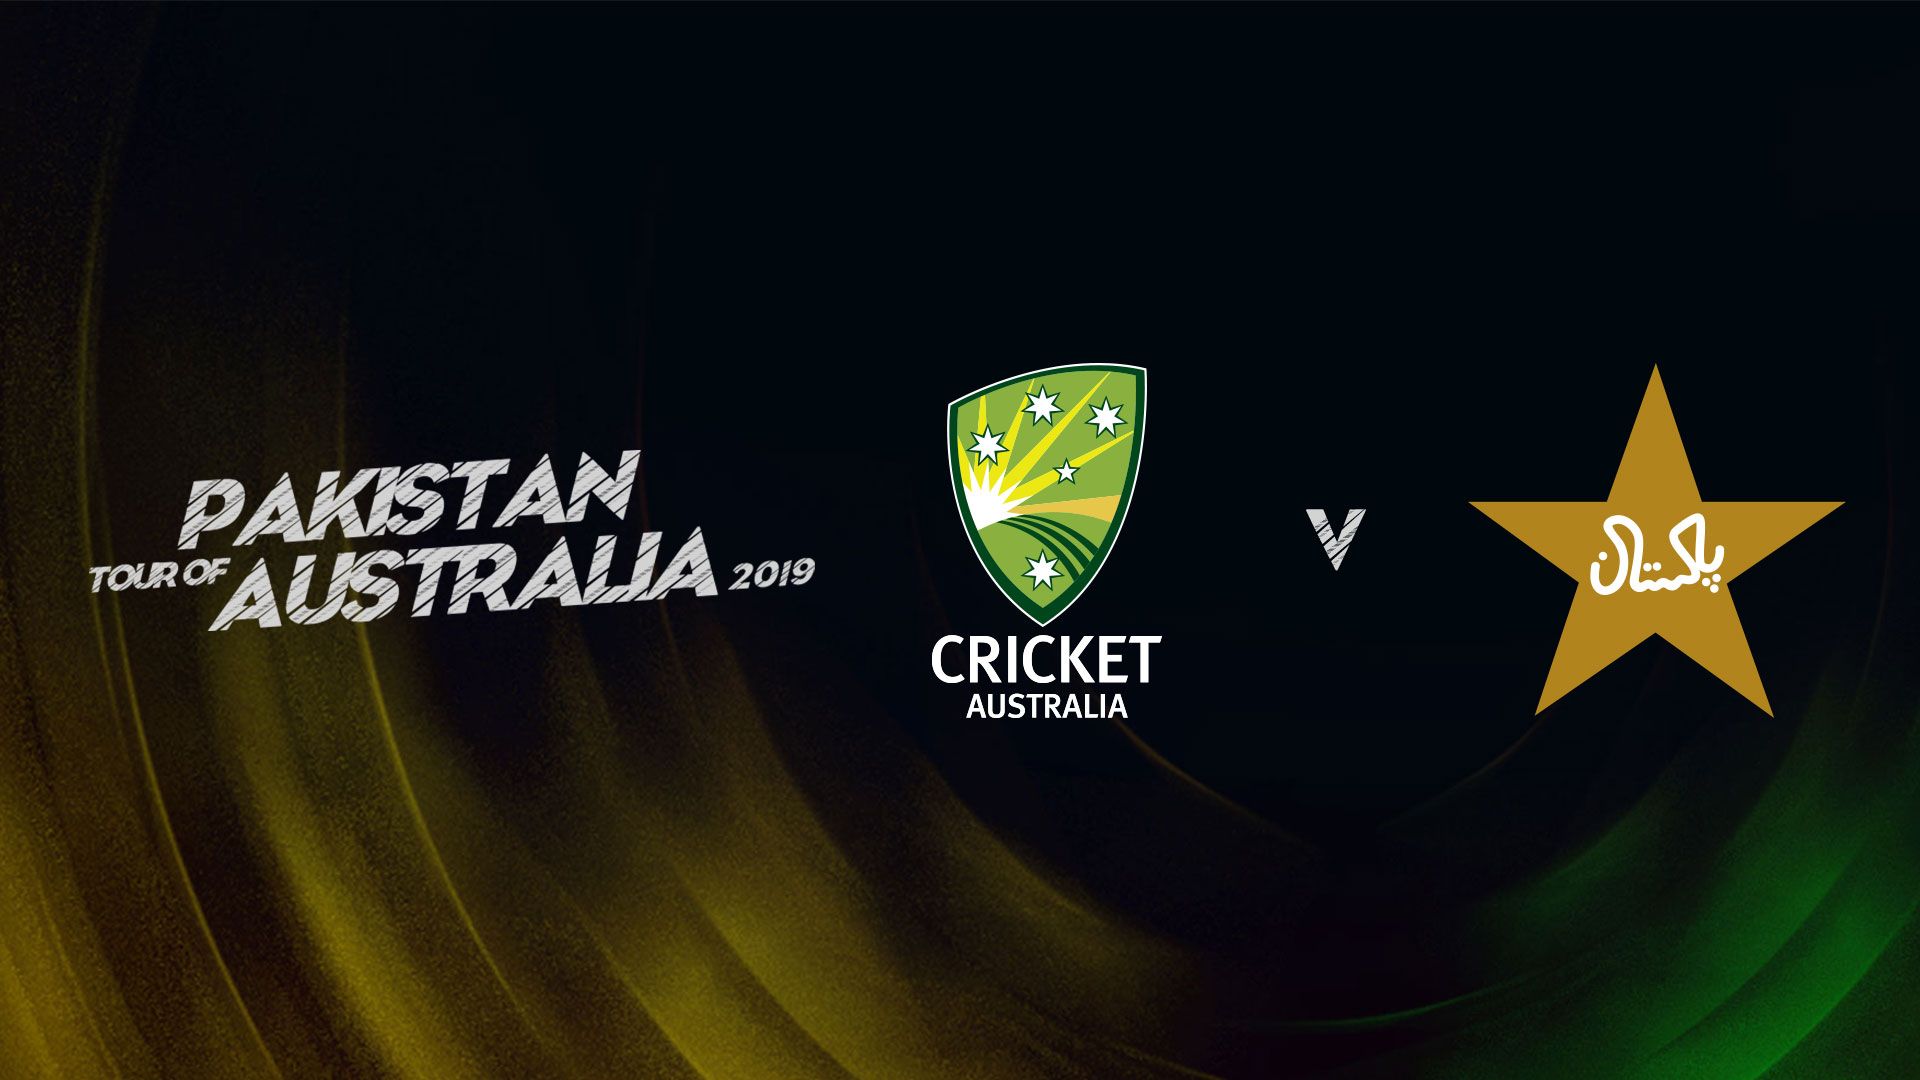 Pakistan Tour of Australia